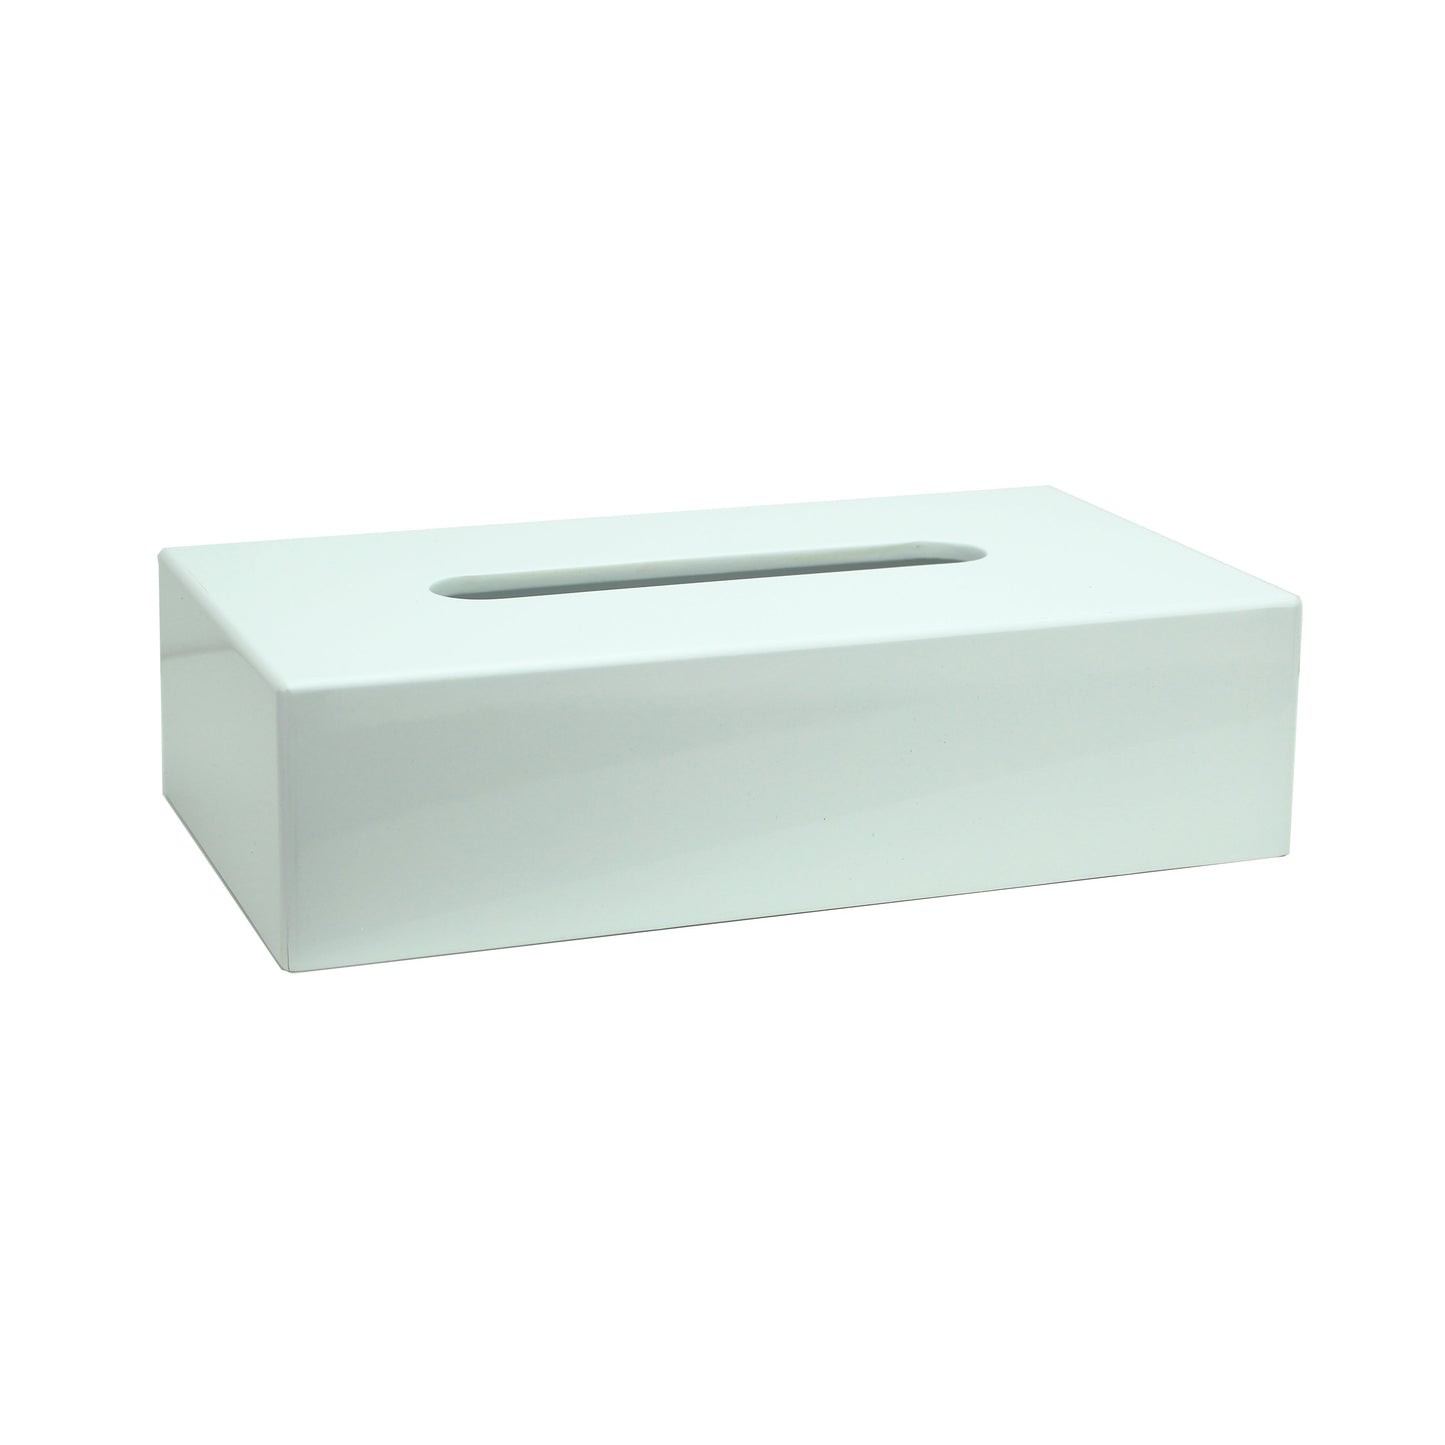 Caja de pañuelos rectangular blanca